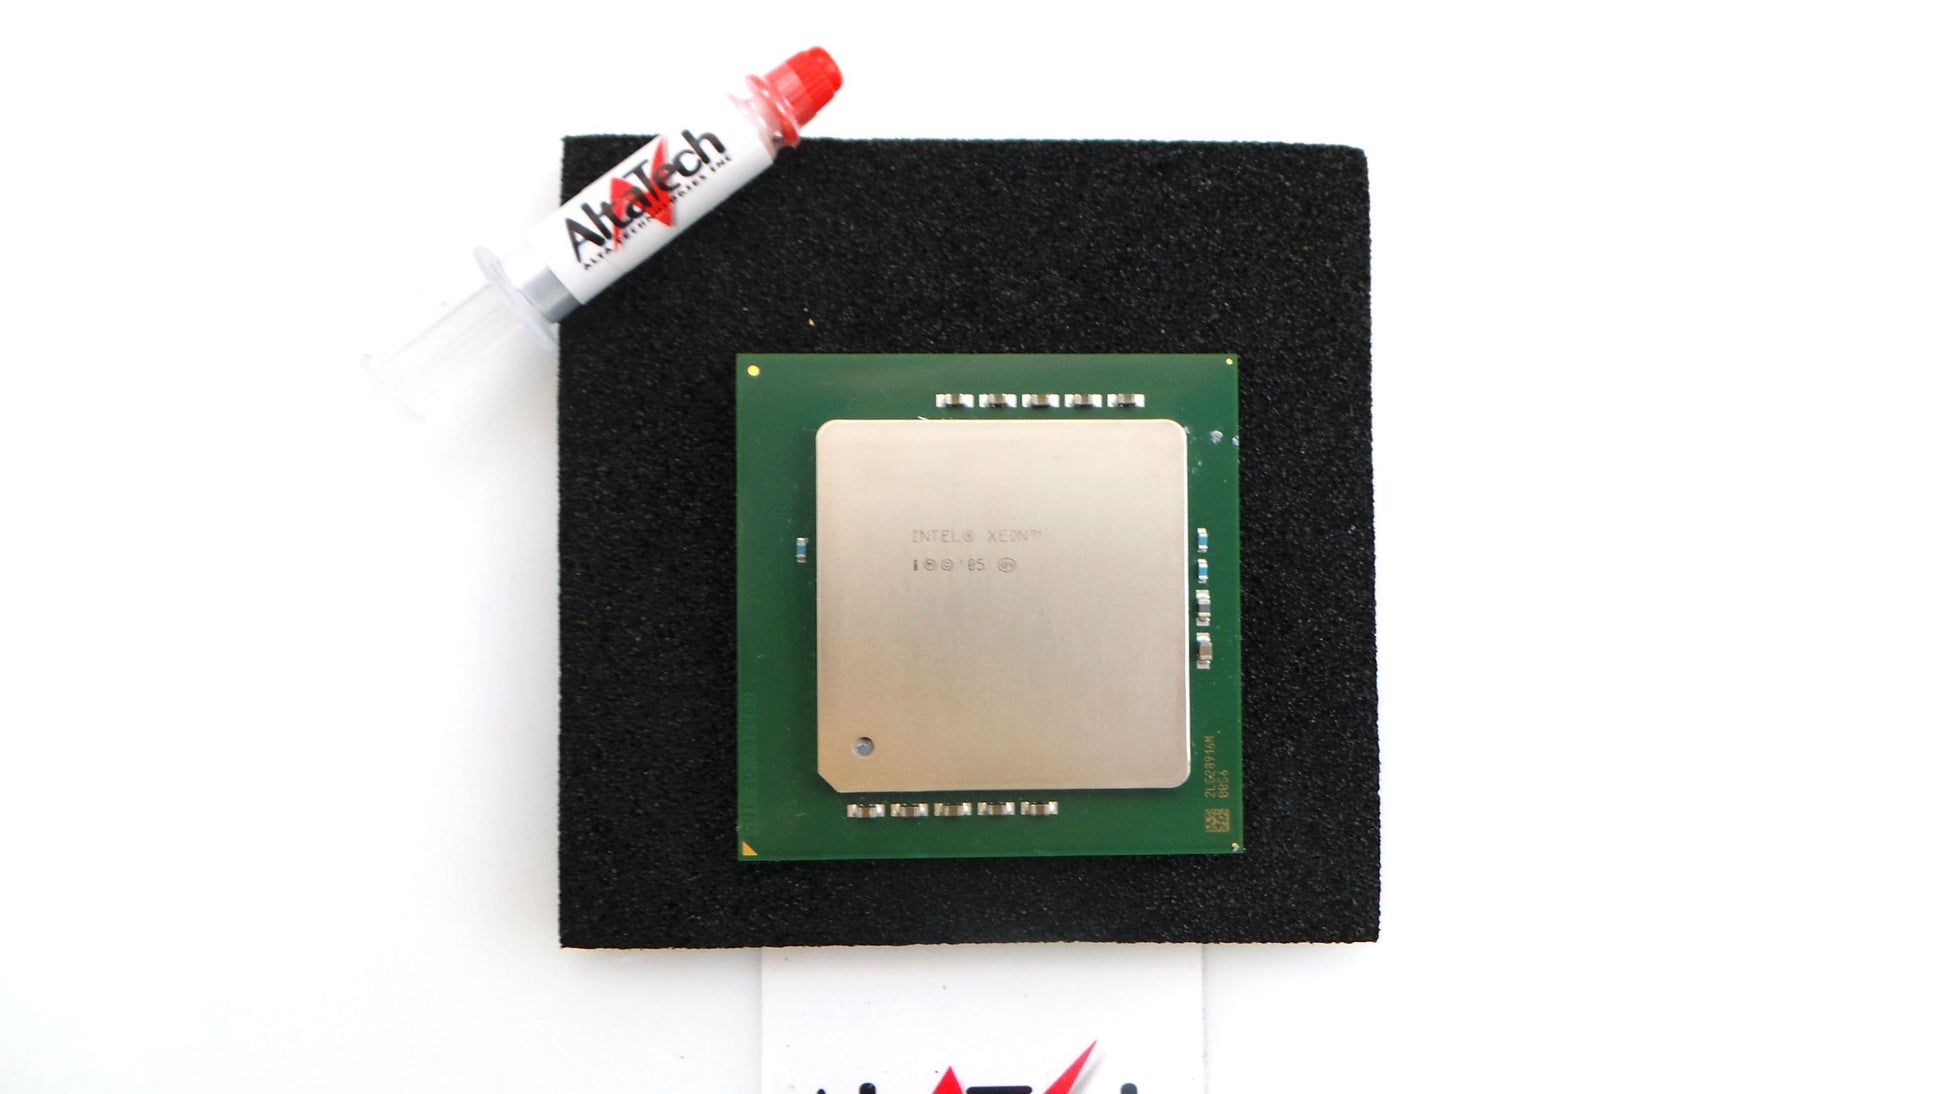 Intel SL8MA Xeon 2.83GHz Processor, Used